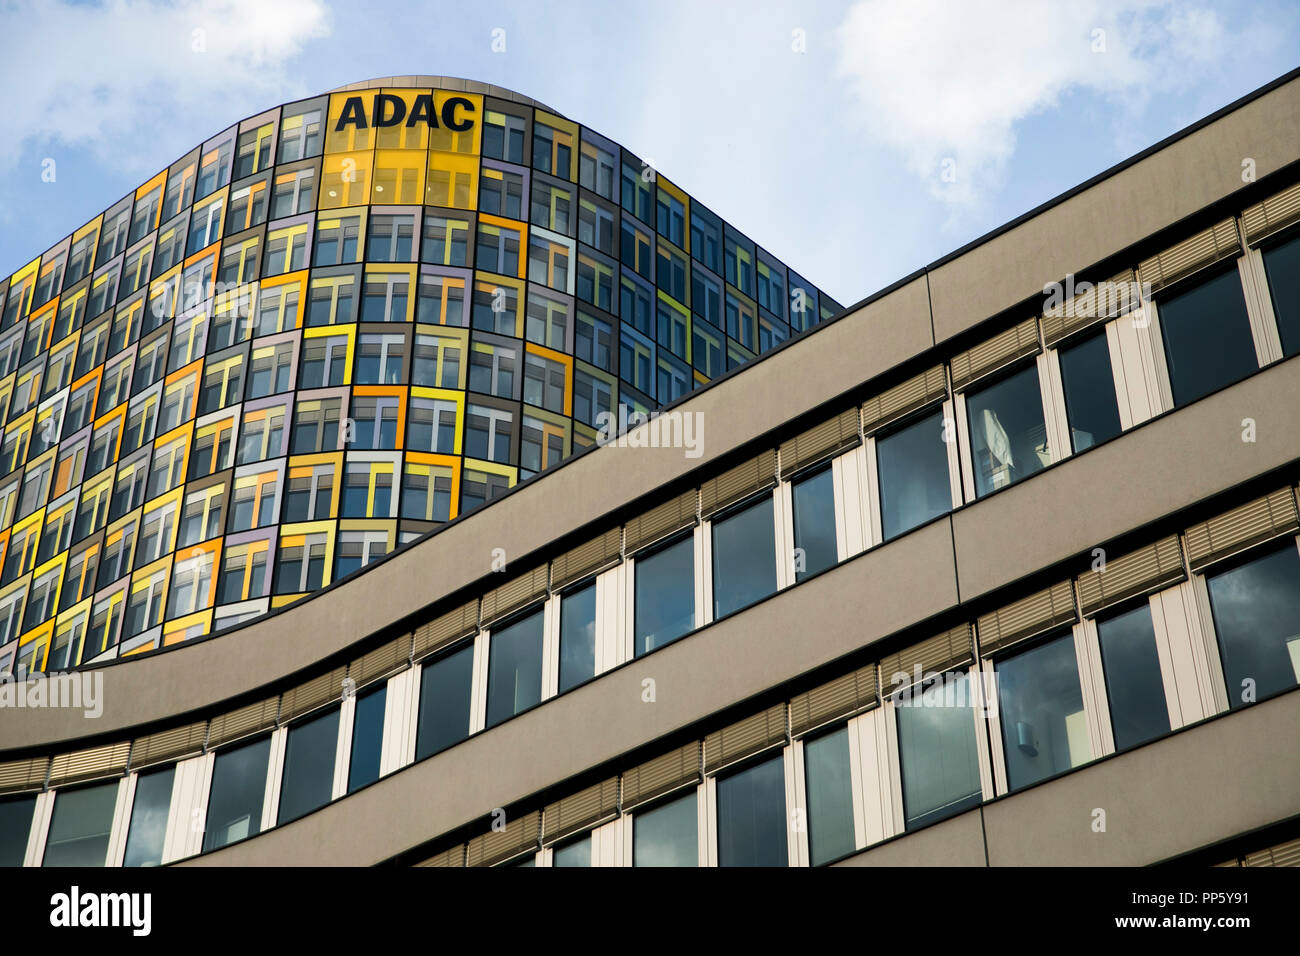 Un logotipo firmar fuera de la sede de la ADAC (Allgemeiner Deutscher Automobil-Club) en Munich, Alemania, el 29 de agosto de 2018. Foto de stock